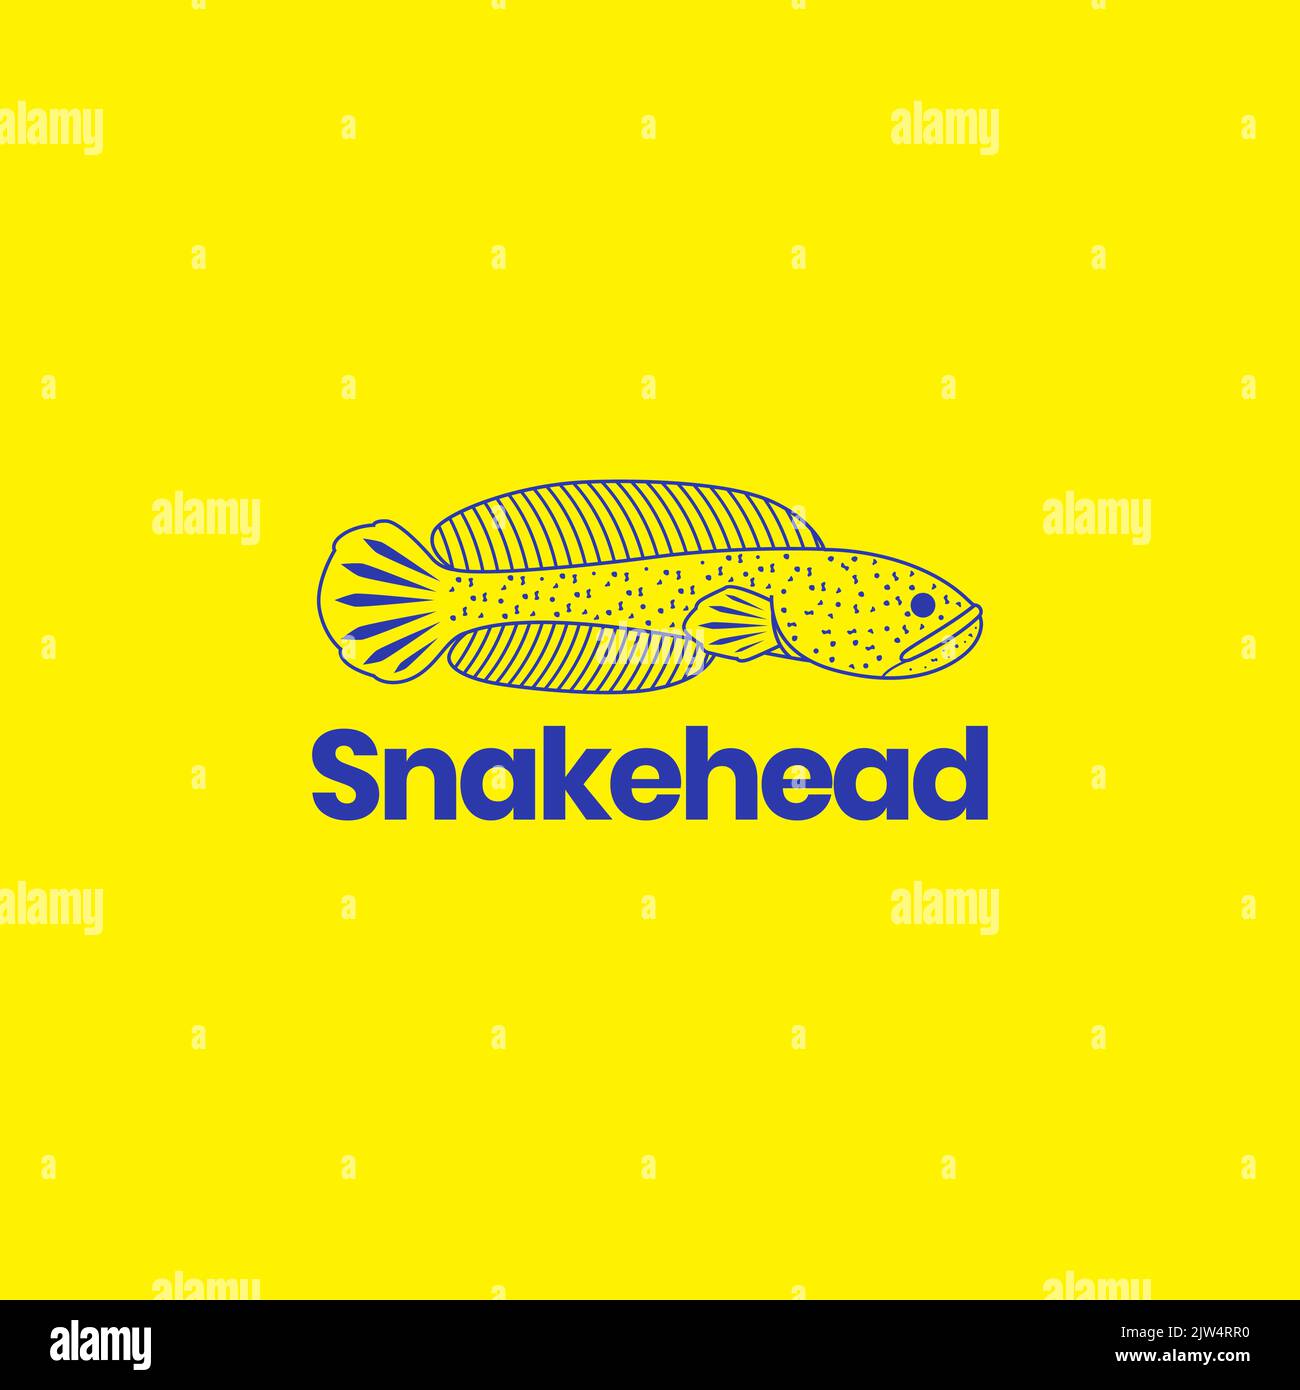 channa snakehead logo design vector Stock Vector